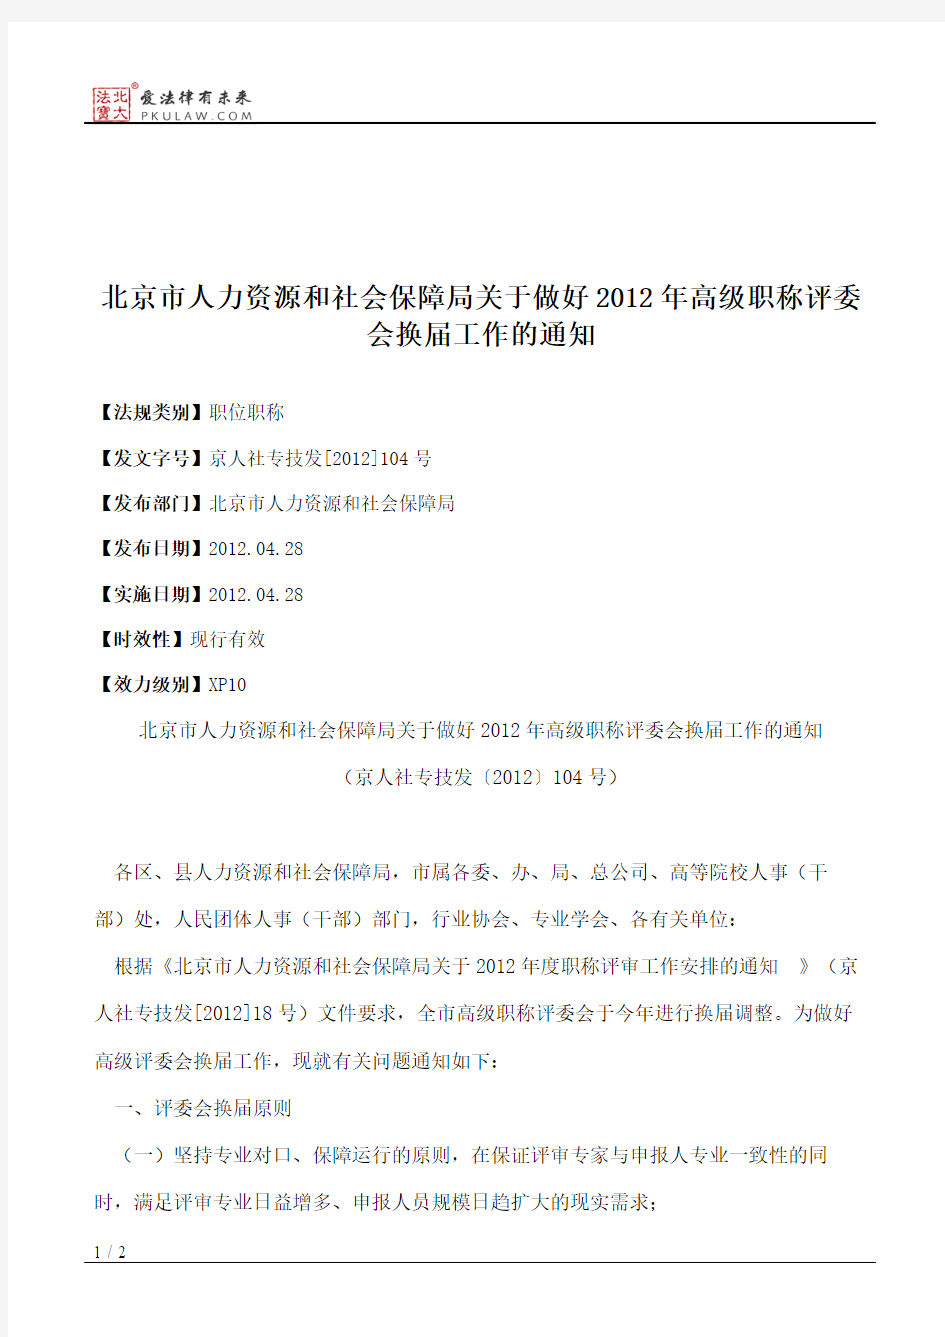 北京市人力资源和社会保障局关于做好2012年高级职称评委会换届工作的通知